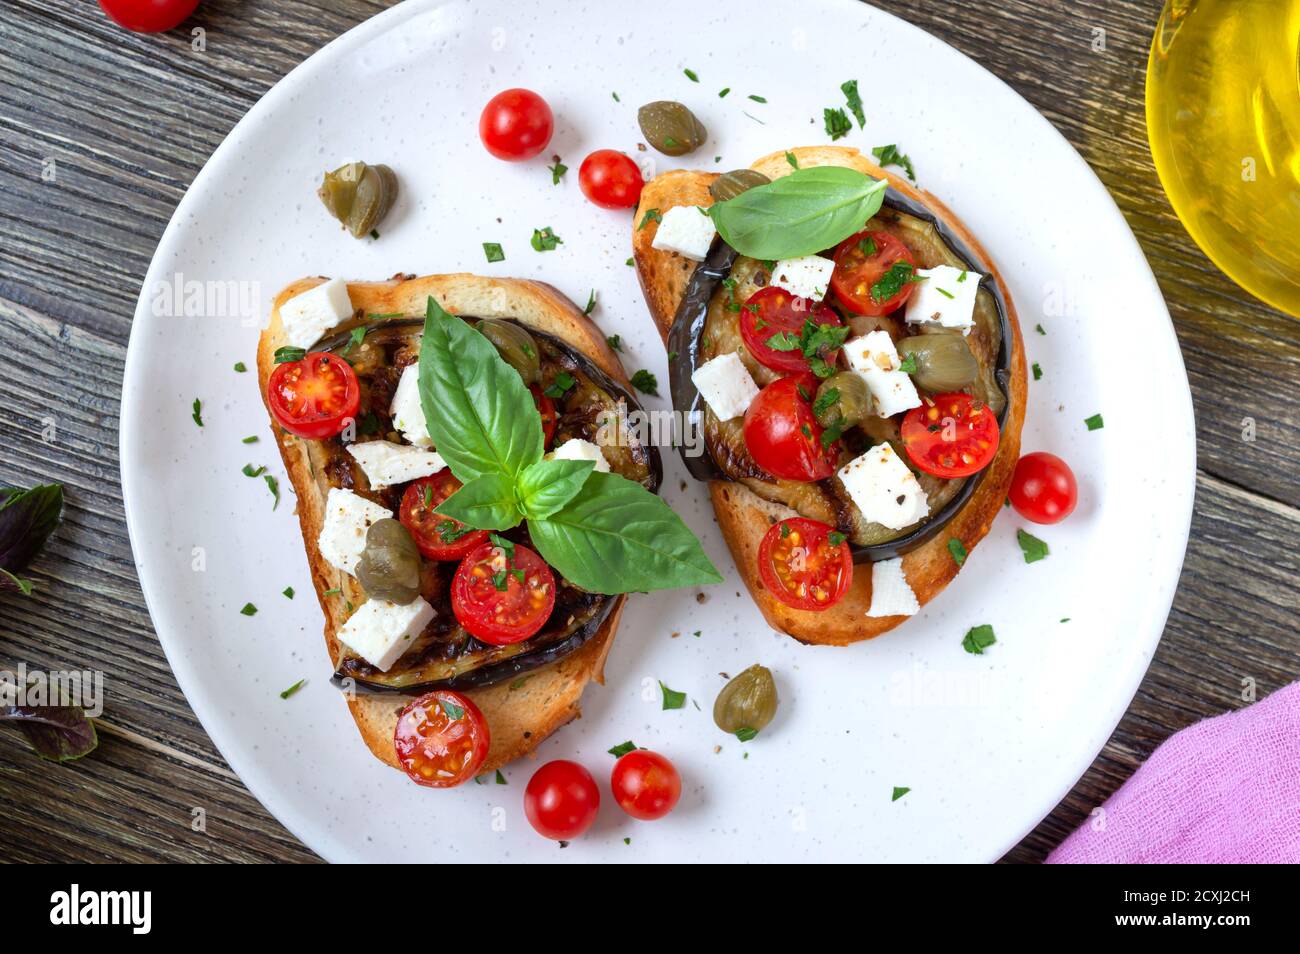 Bruschetta all'aglio con melanzane, feta, pomodori ciliegini, capperi. Utile antipasto vegetariano. Cucina italiana. Foto Stock